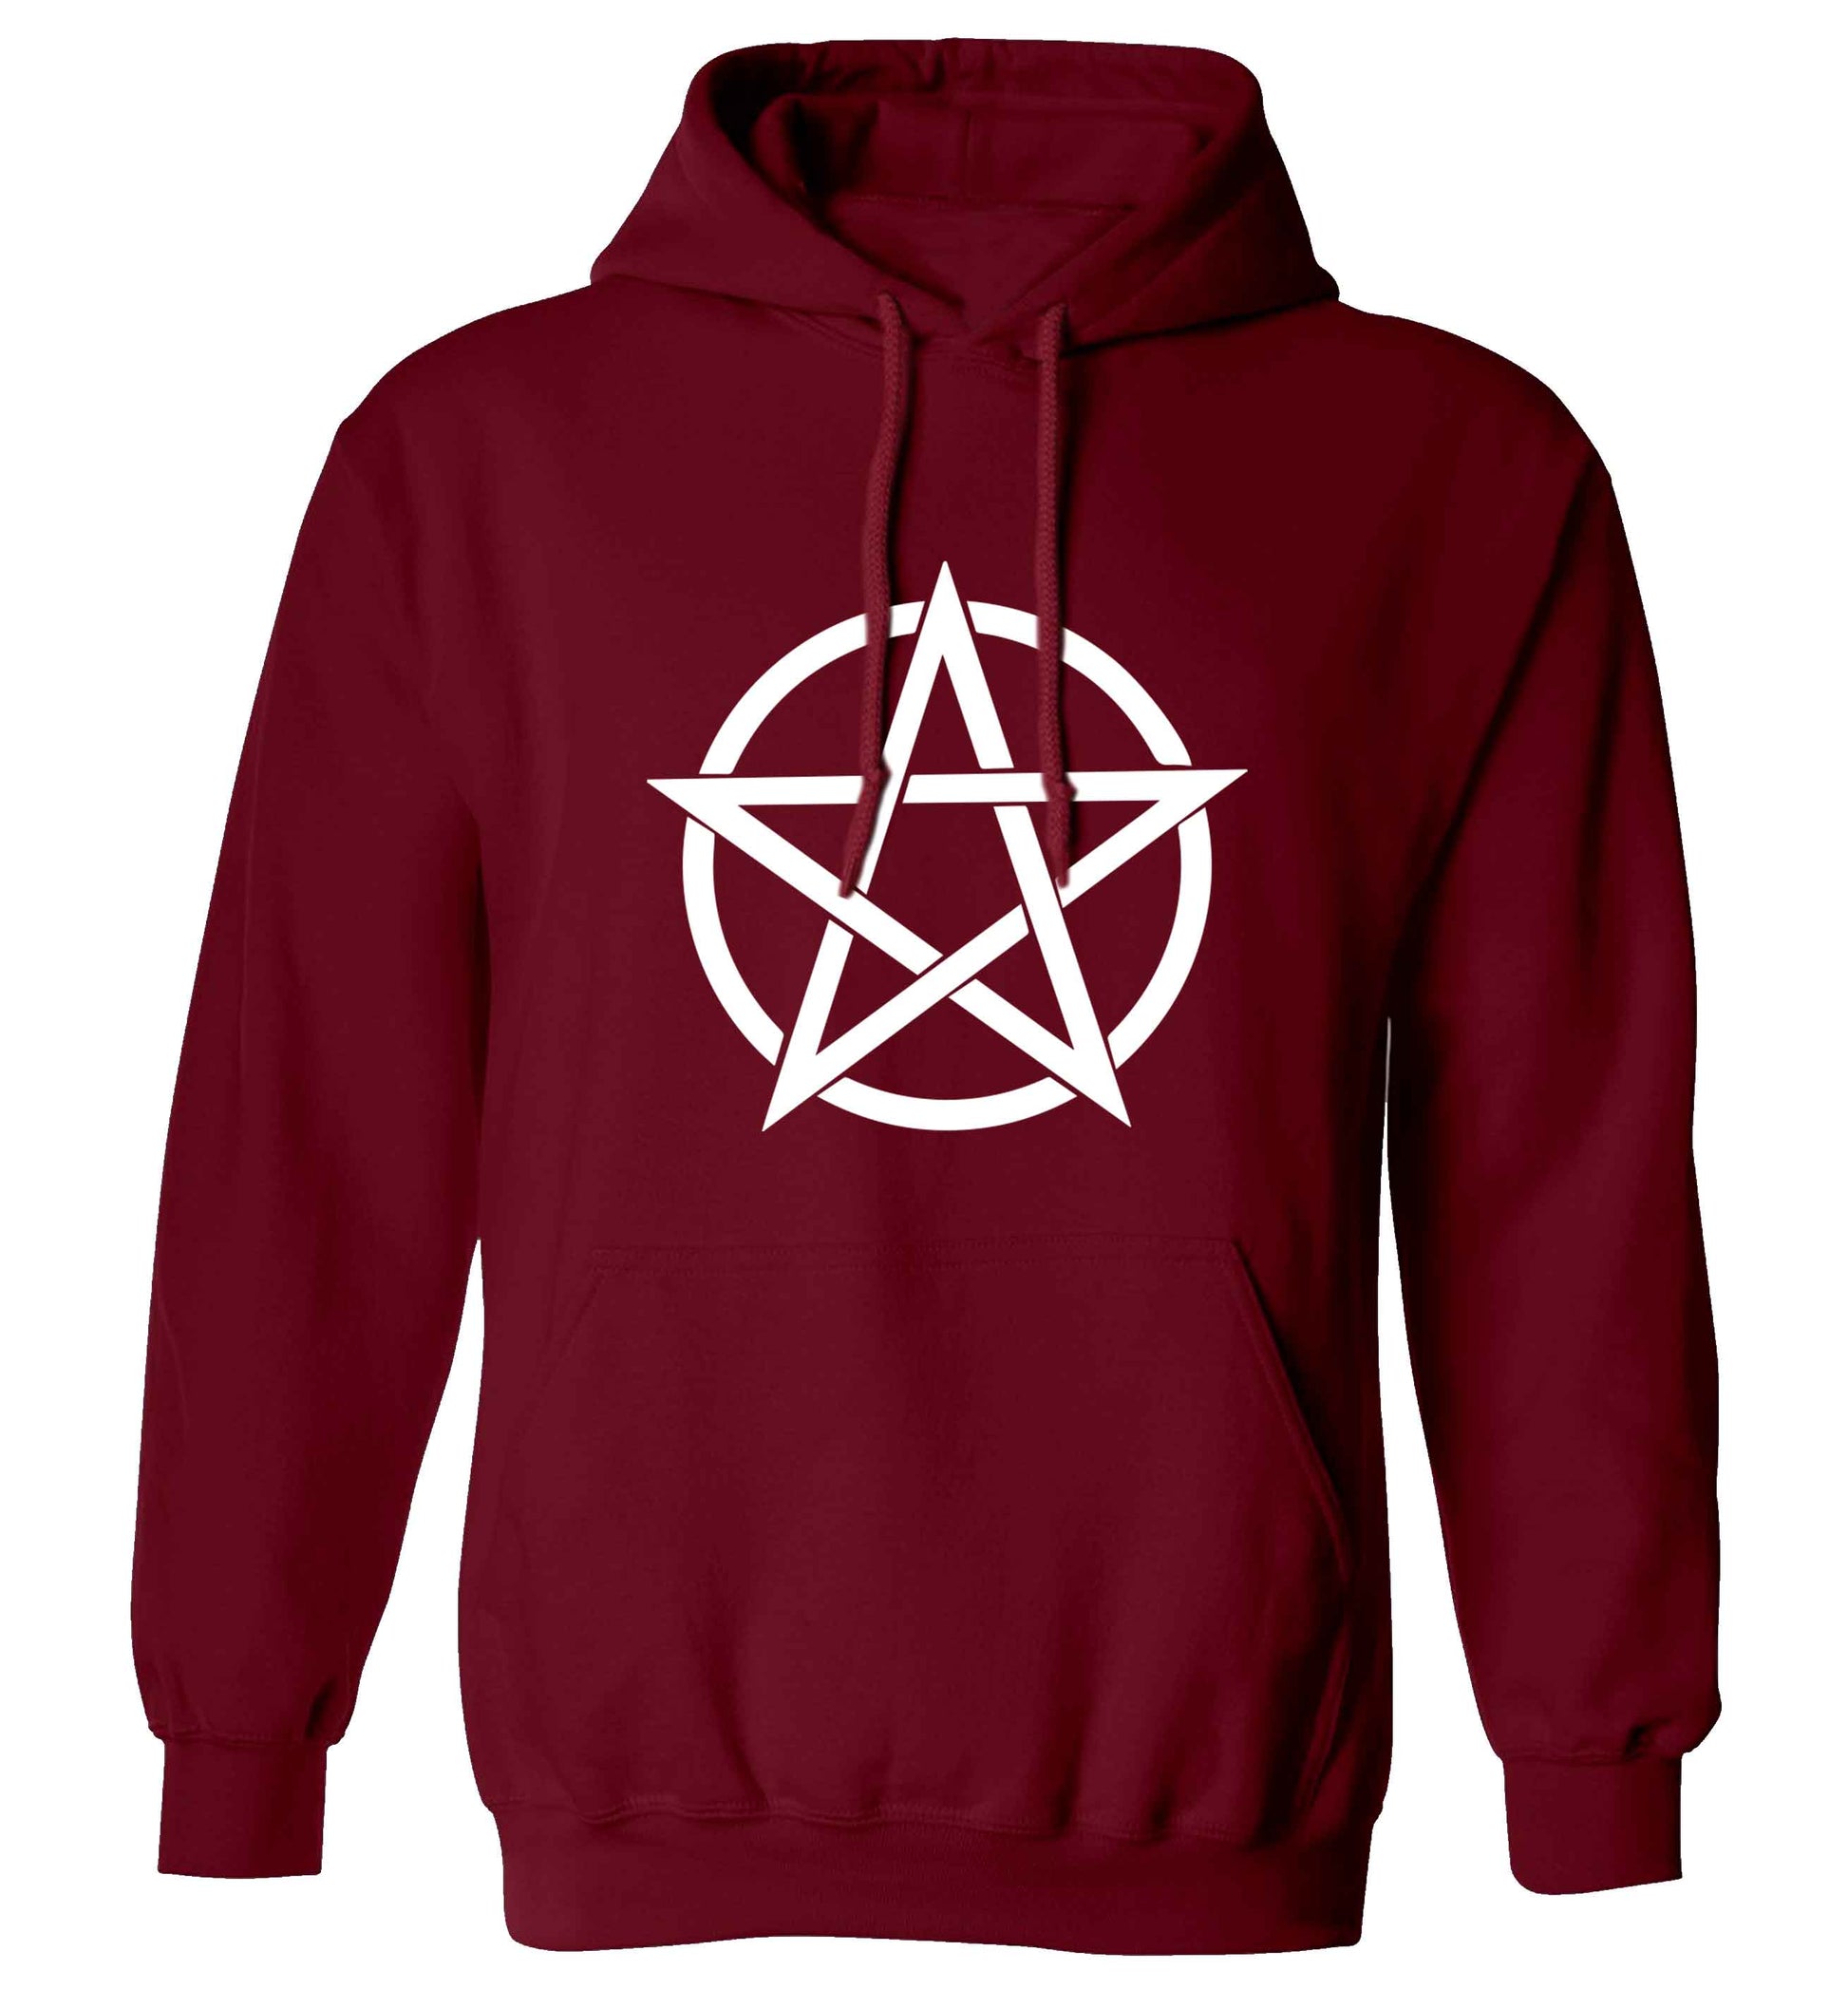 Pentagram symbol adults unisex maroon hoodie 2XL